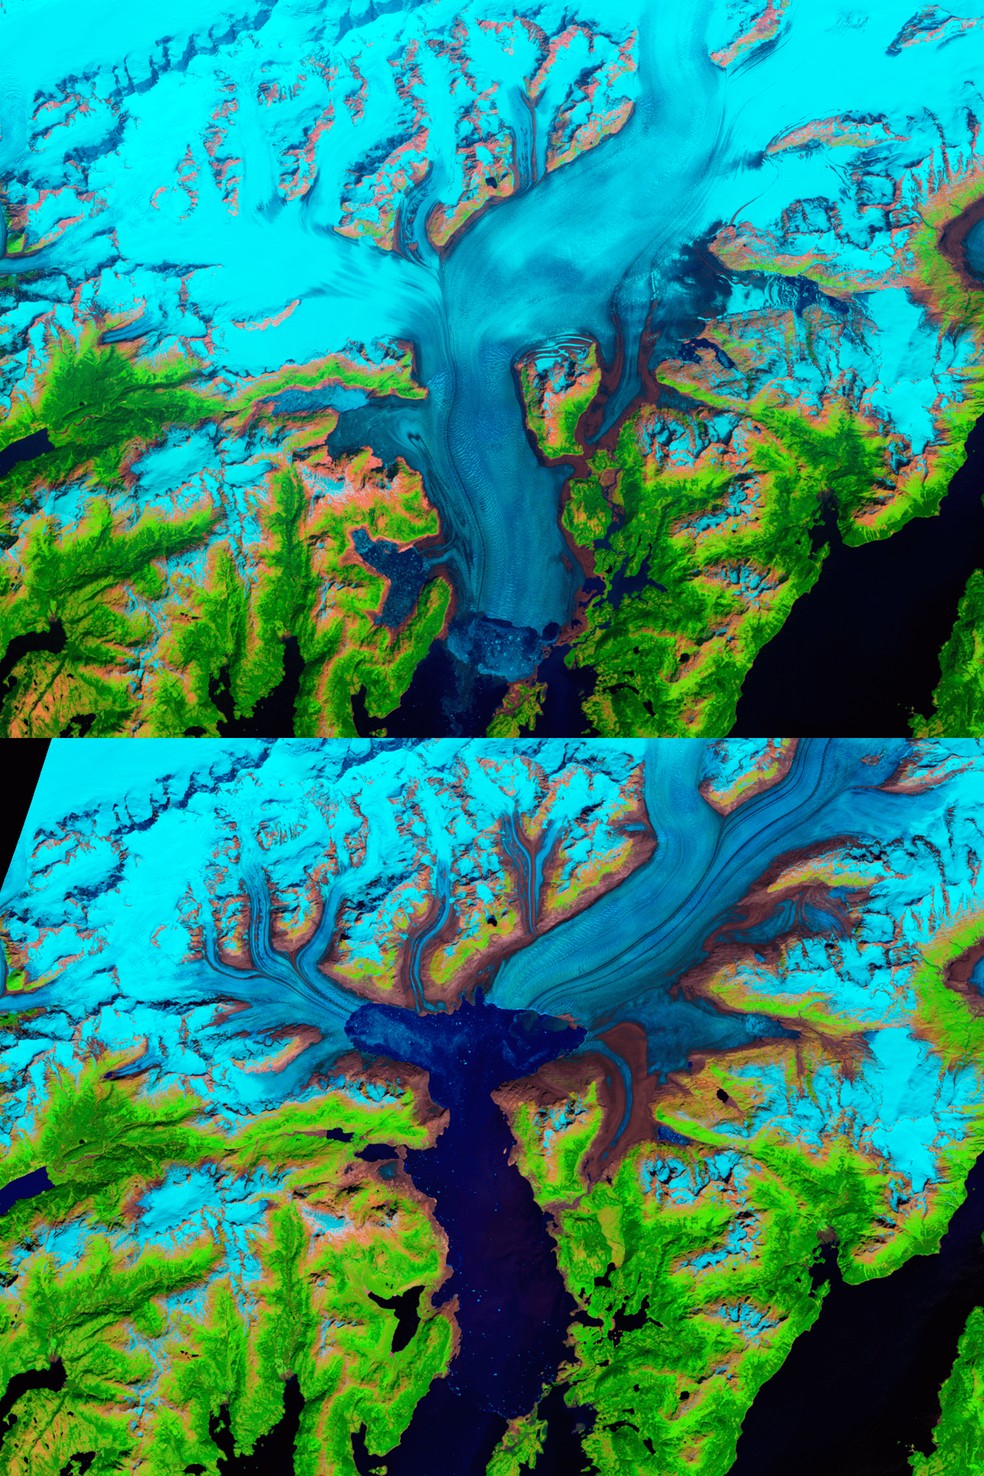 Derretimento da geleira Columbia, Alasca, nos EUA — Foto: NASA